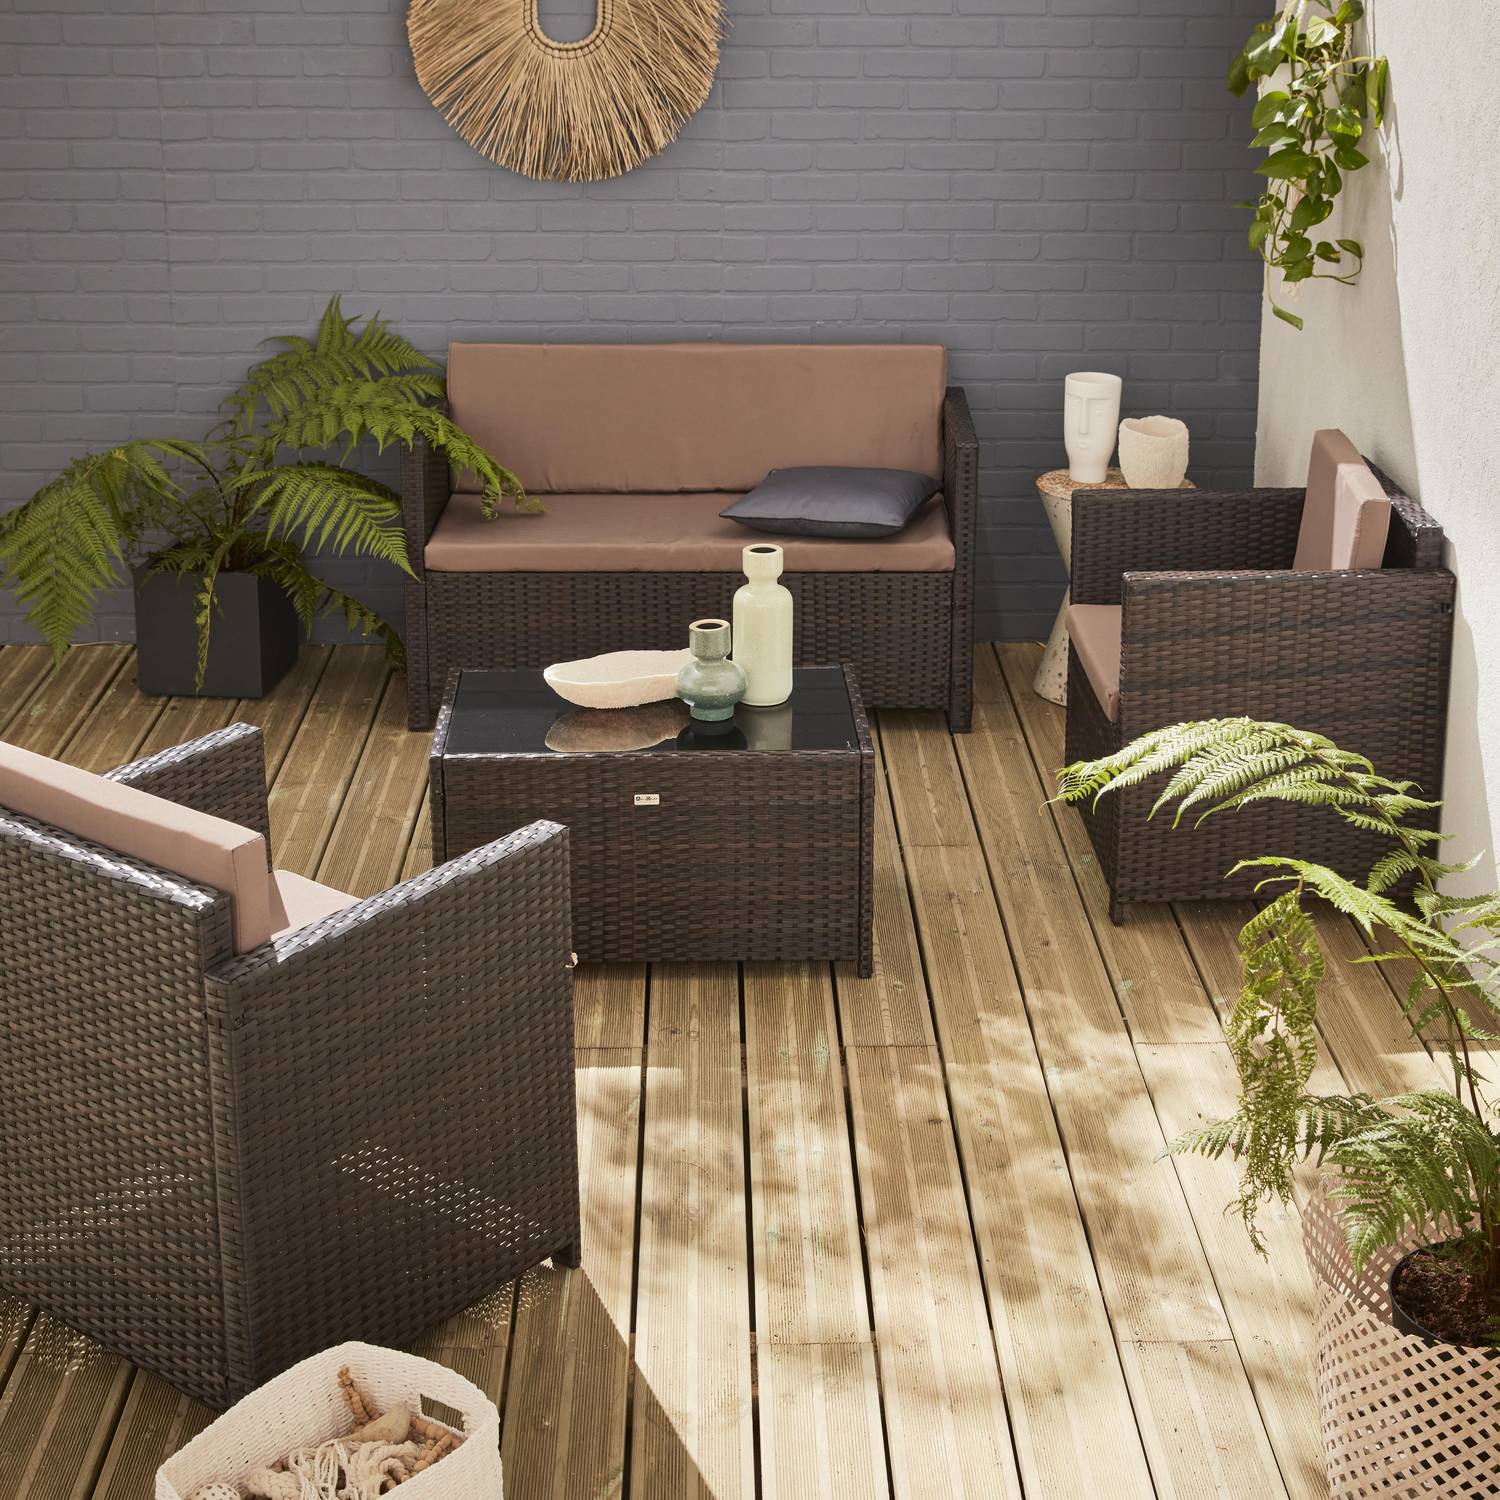 Gartengarnitur aus Kunststoffrattan - Perugia - Schokoladenfarben, braune Kissen - 4 Plätze - 1 Sofa, 2 Sessel, ein Couchtisch Photo1